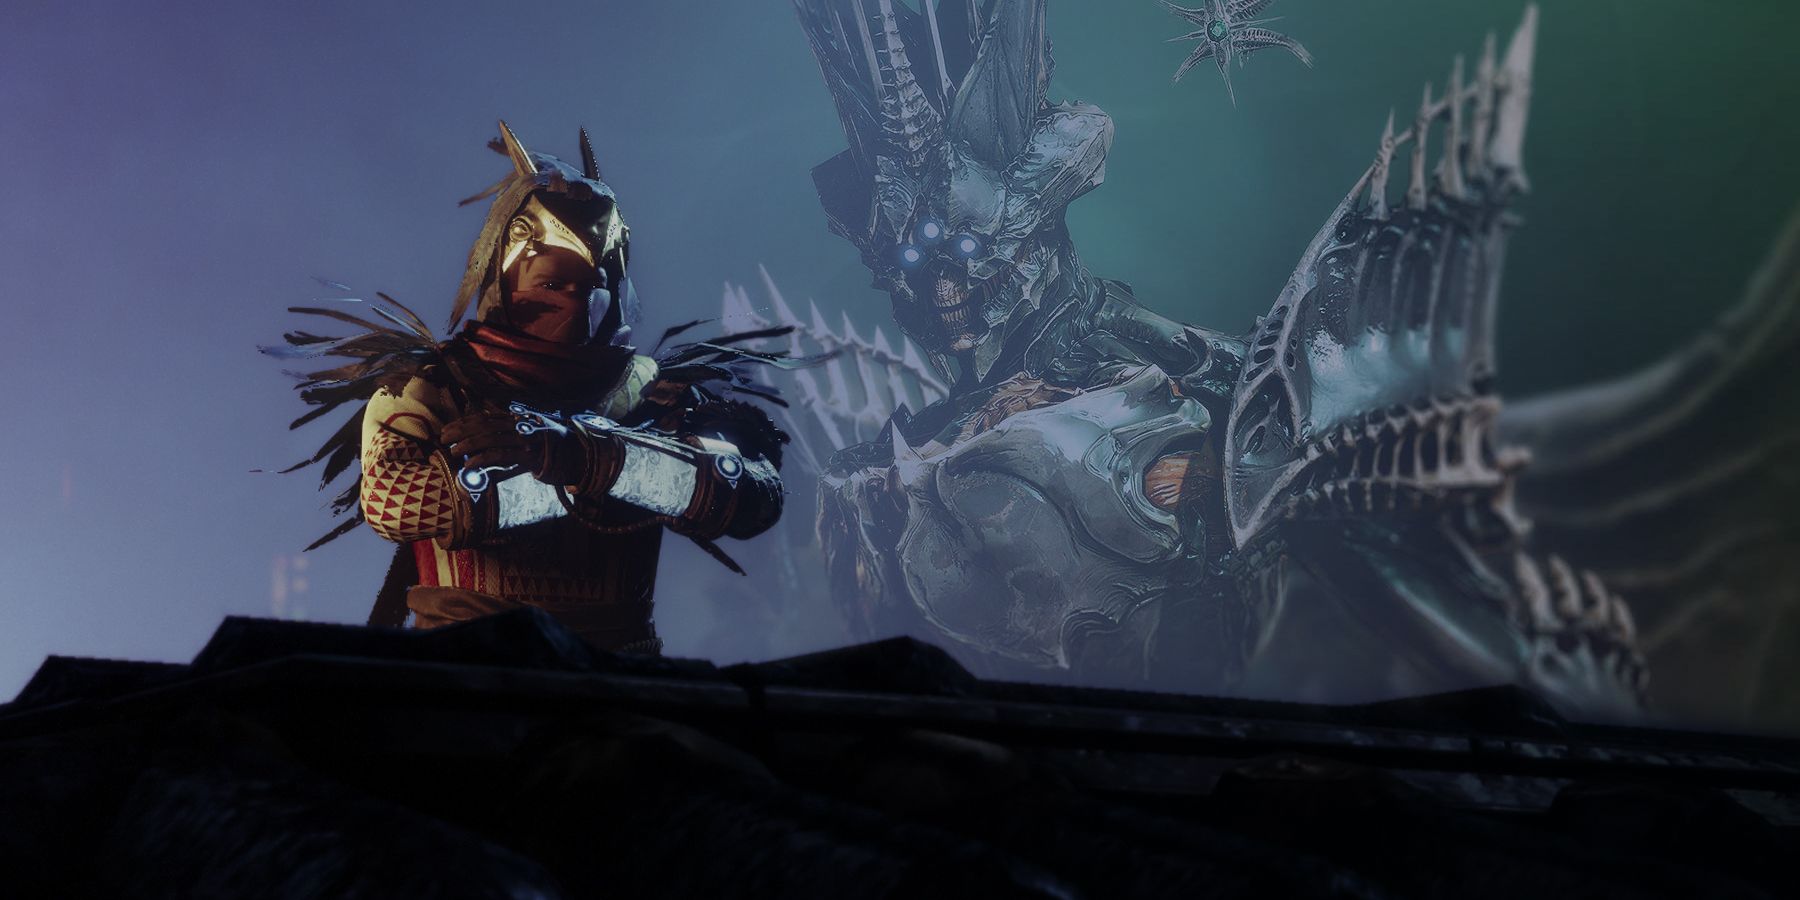 Чернокнижник Осирис из Destiny 2 на уступе с темной фигурой Королевы ведьм Улья, Саватун и ее призраком на заднем плане.